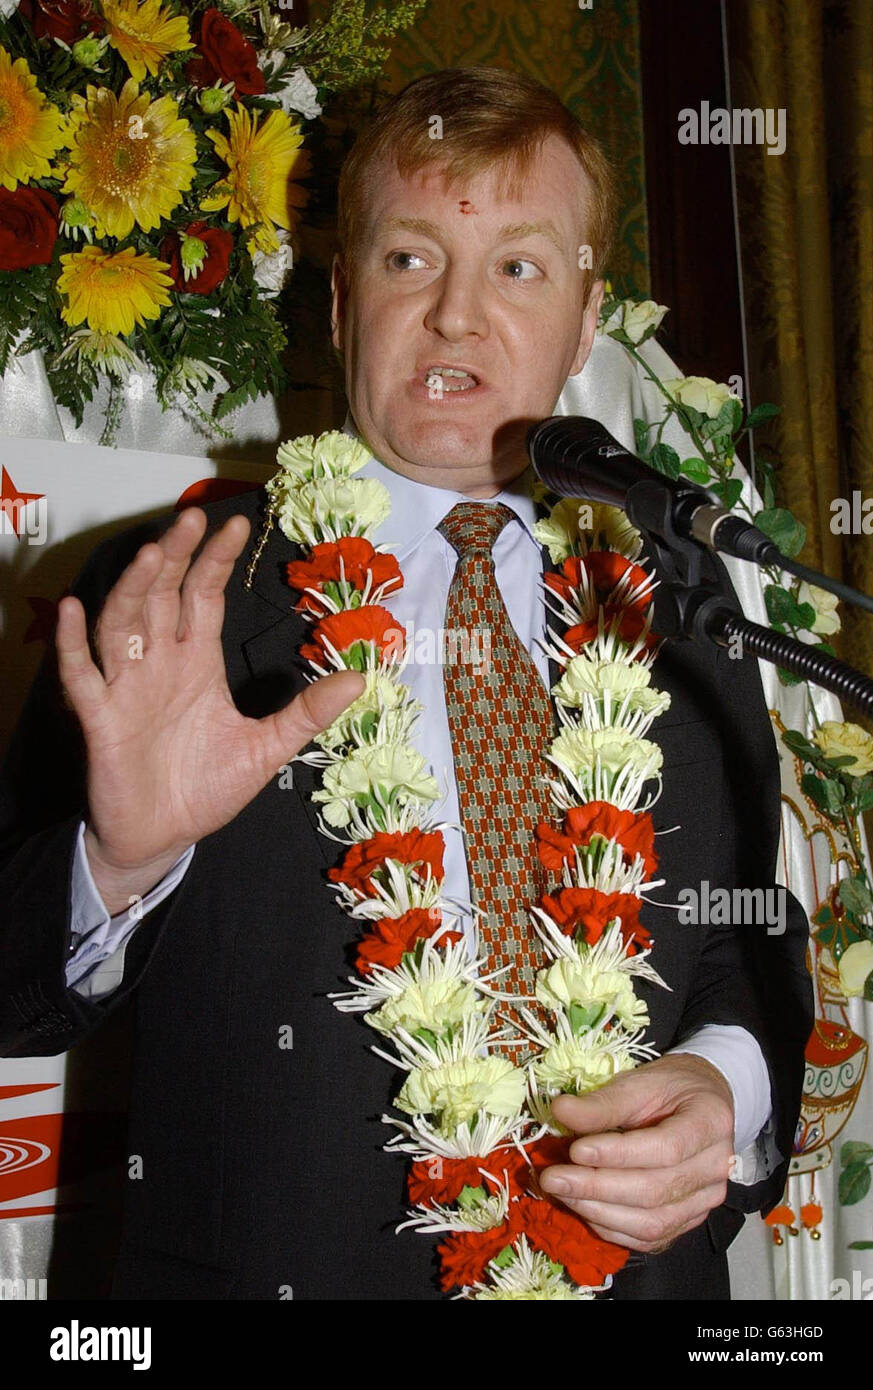 Charles Kennedy il leader del partito liberal-democratico indossa una ghirlanda di fiori al partito Indù Diwali alla Camera dei Comuni. Kennedy si unì a più di 100 deputati di tutti i partiti al primo partito del parlamento Diwali. * Diwali è una festa indù che celebra il ritorno del Signore Rama dopo aver distrutto le forze malvagie di Ravana. Foto Stock